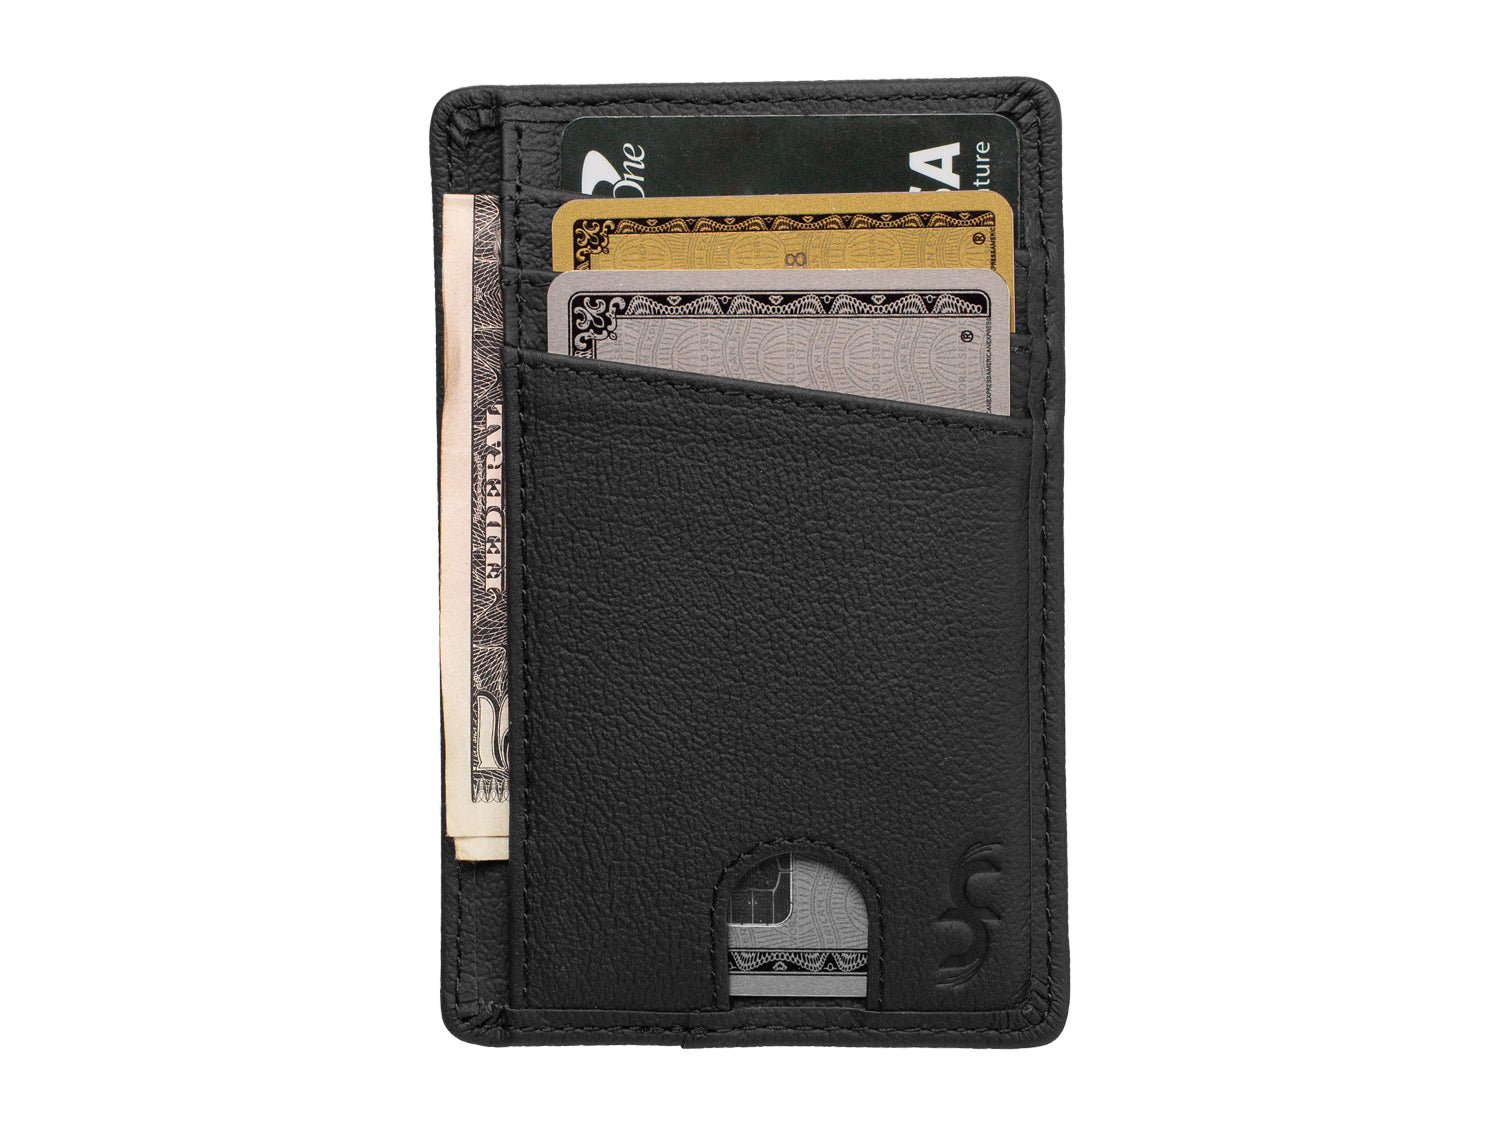 CarbonFG Carbon Fiber & Leather Money Clip Wallet